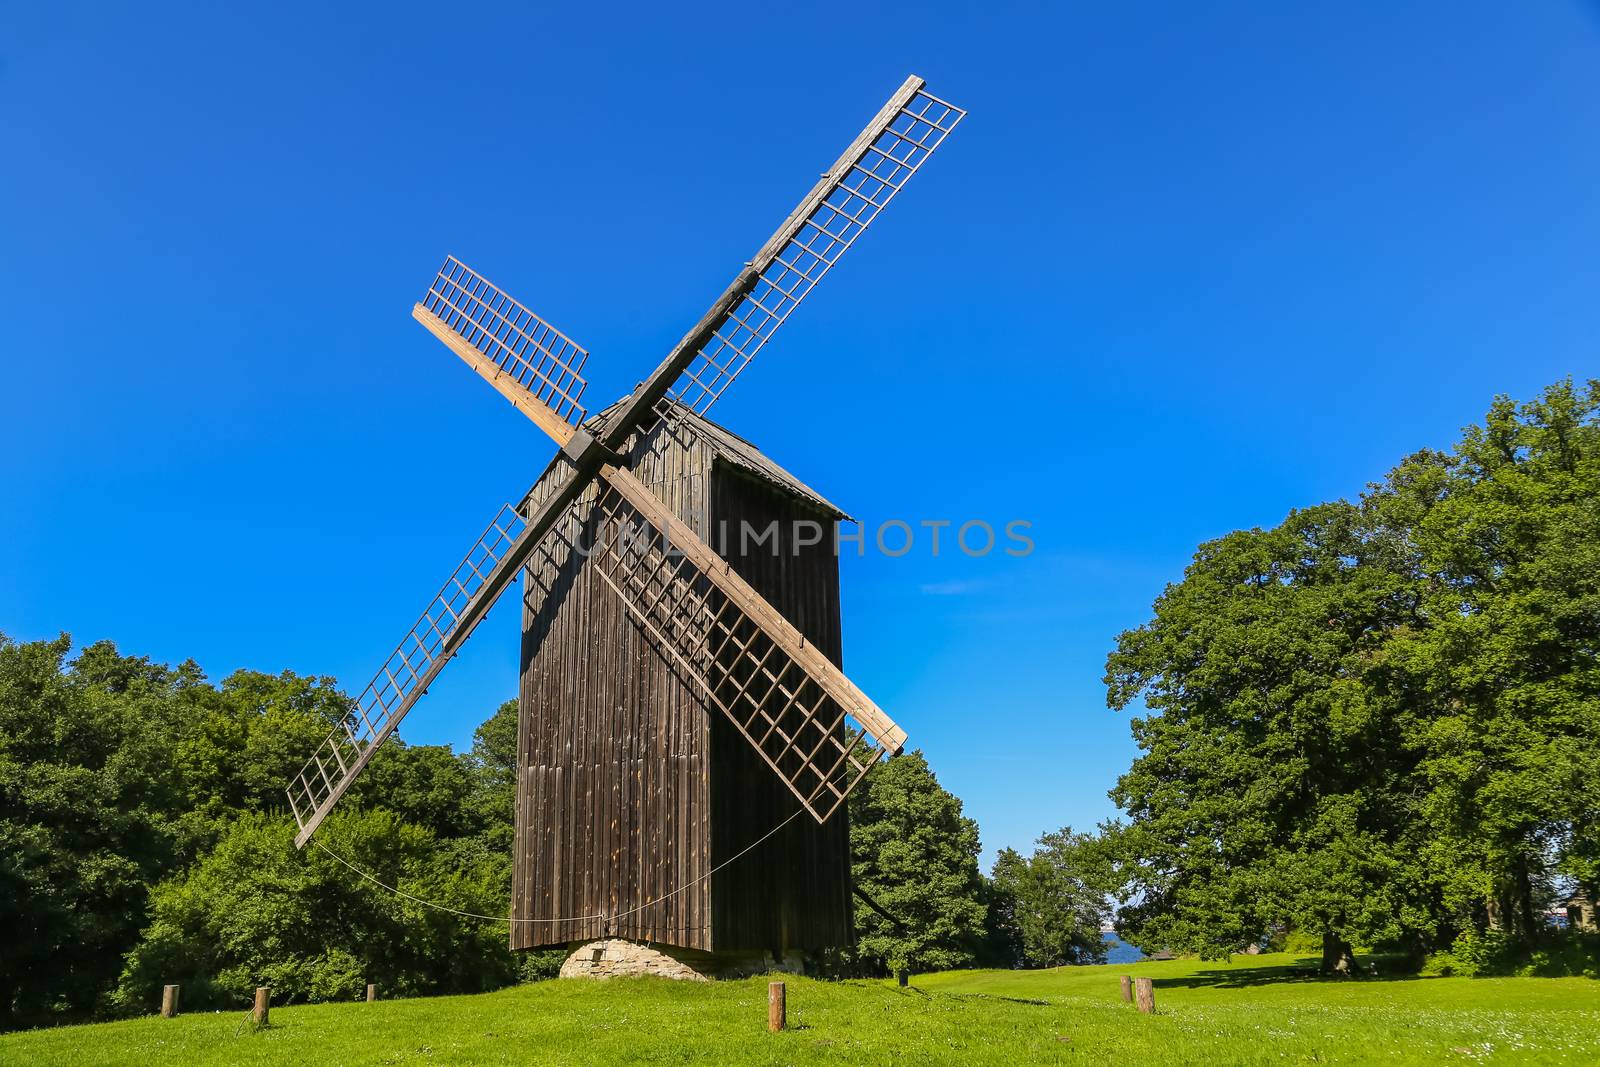 Traditional windmill, Rocca al Mare, close to city of Tallinn in Estonia.